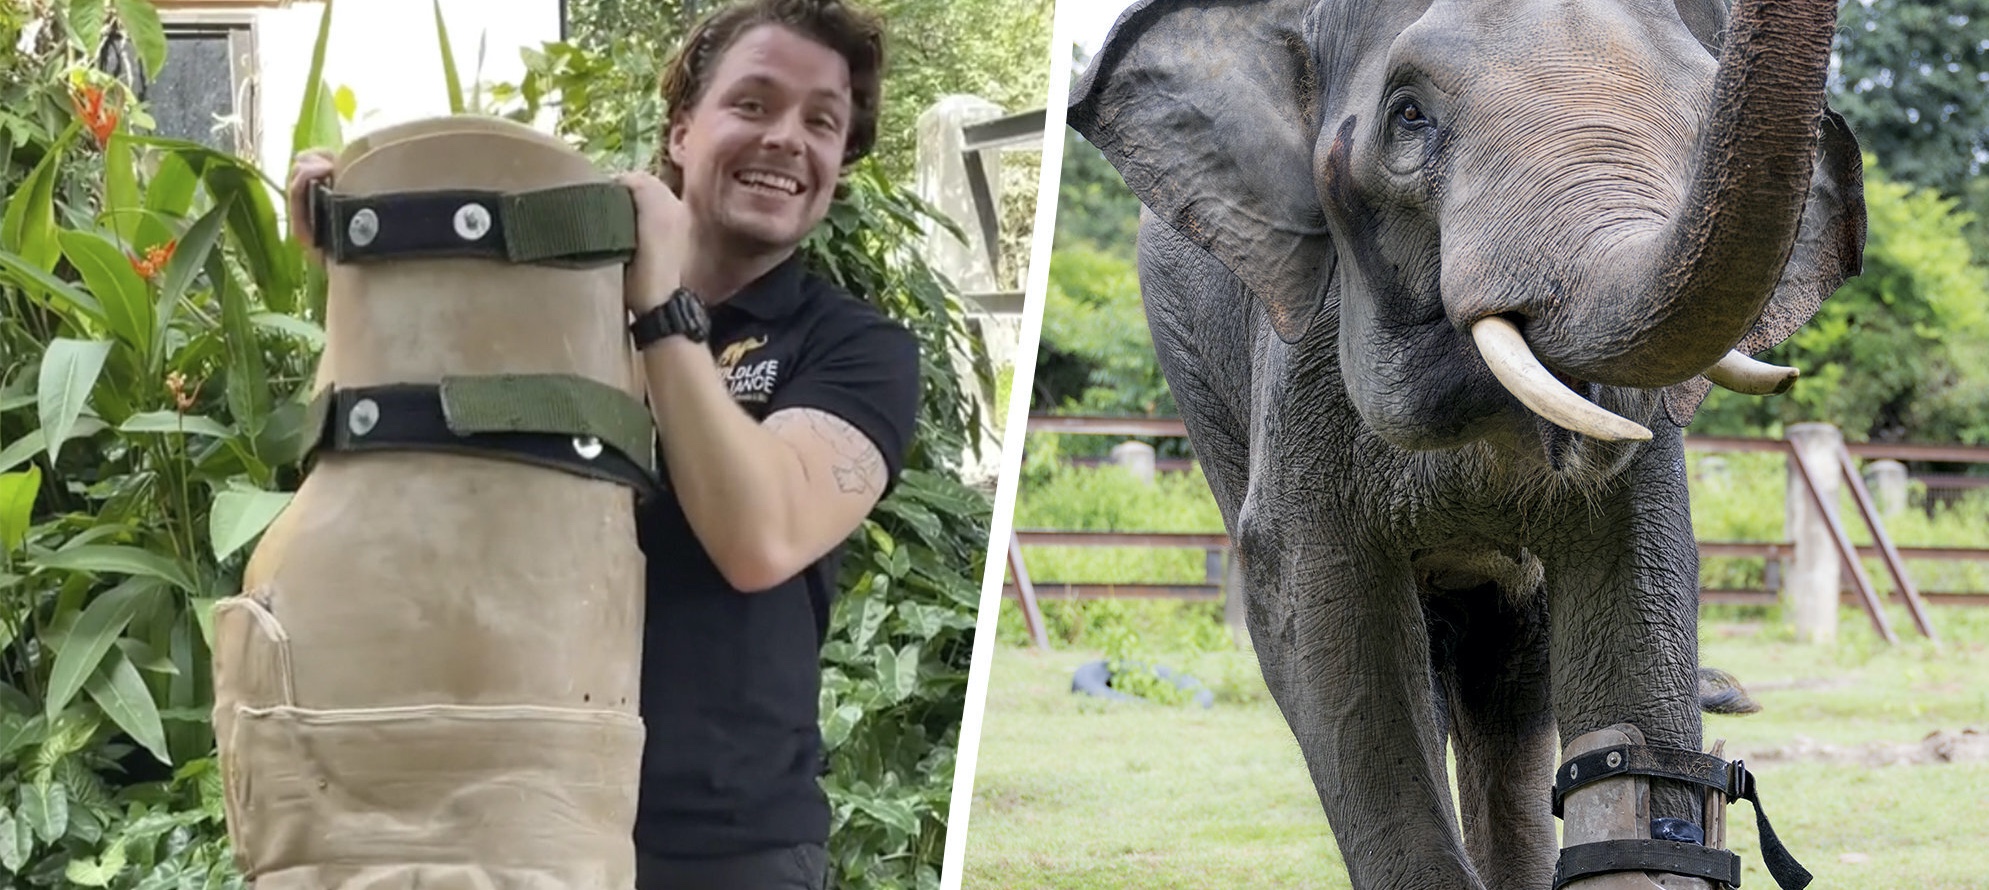 Műlábat kapott a Chouk nevű elefánt, így most újra tud járni